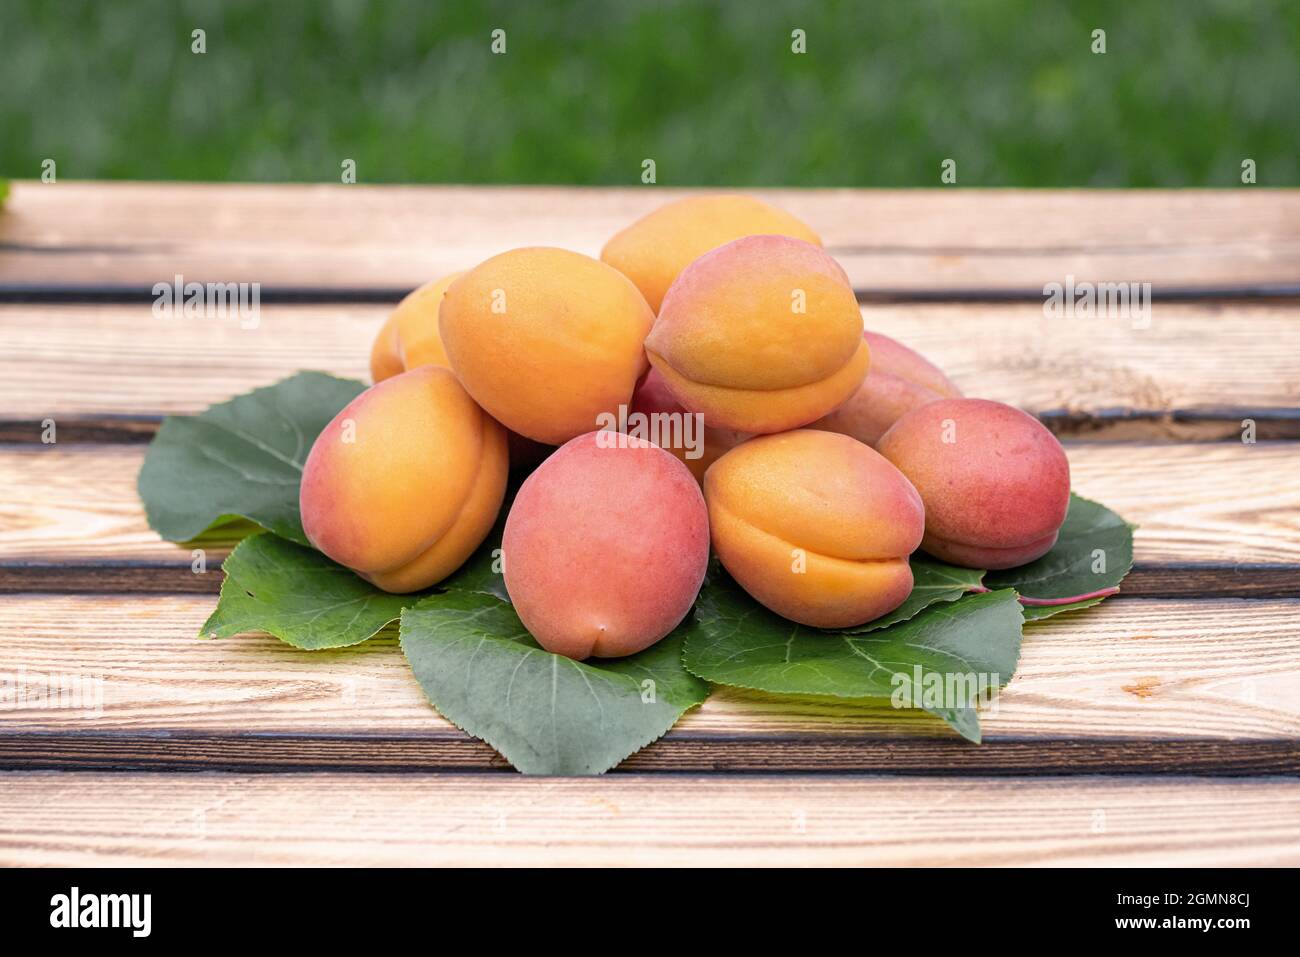 Aprikosenbaum (Prunus armeniaca 'Farbaly', Prunus armeniaca Farbaly), Aprikosen der Sorte Farbaly, Deutschland Stockfoto